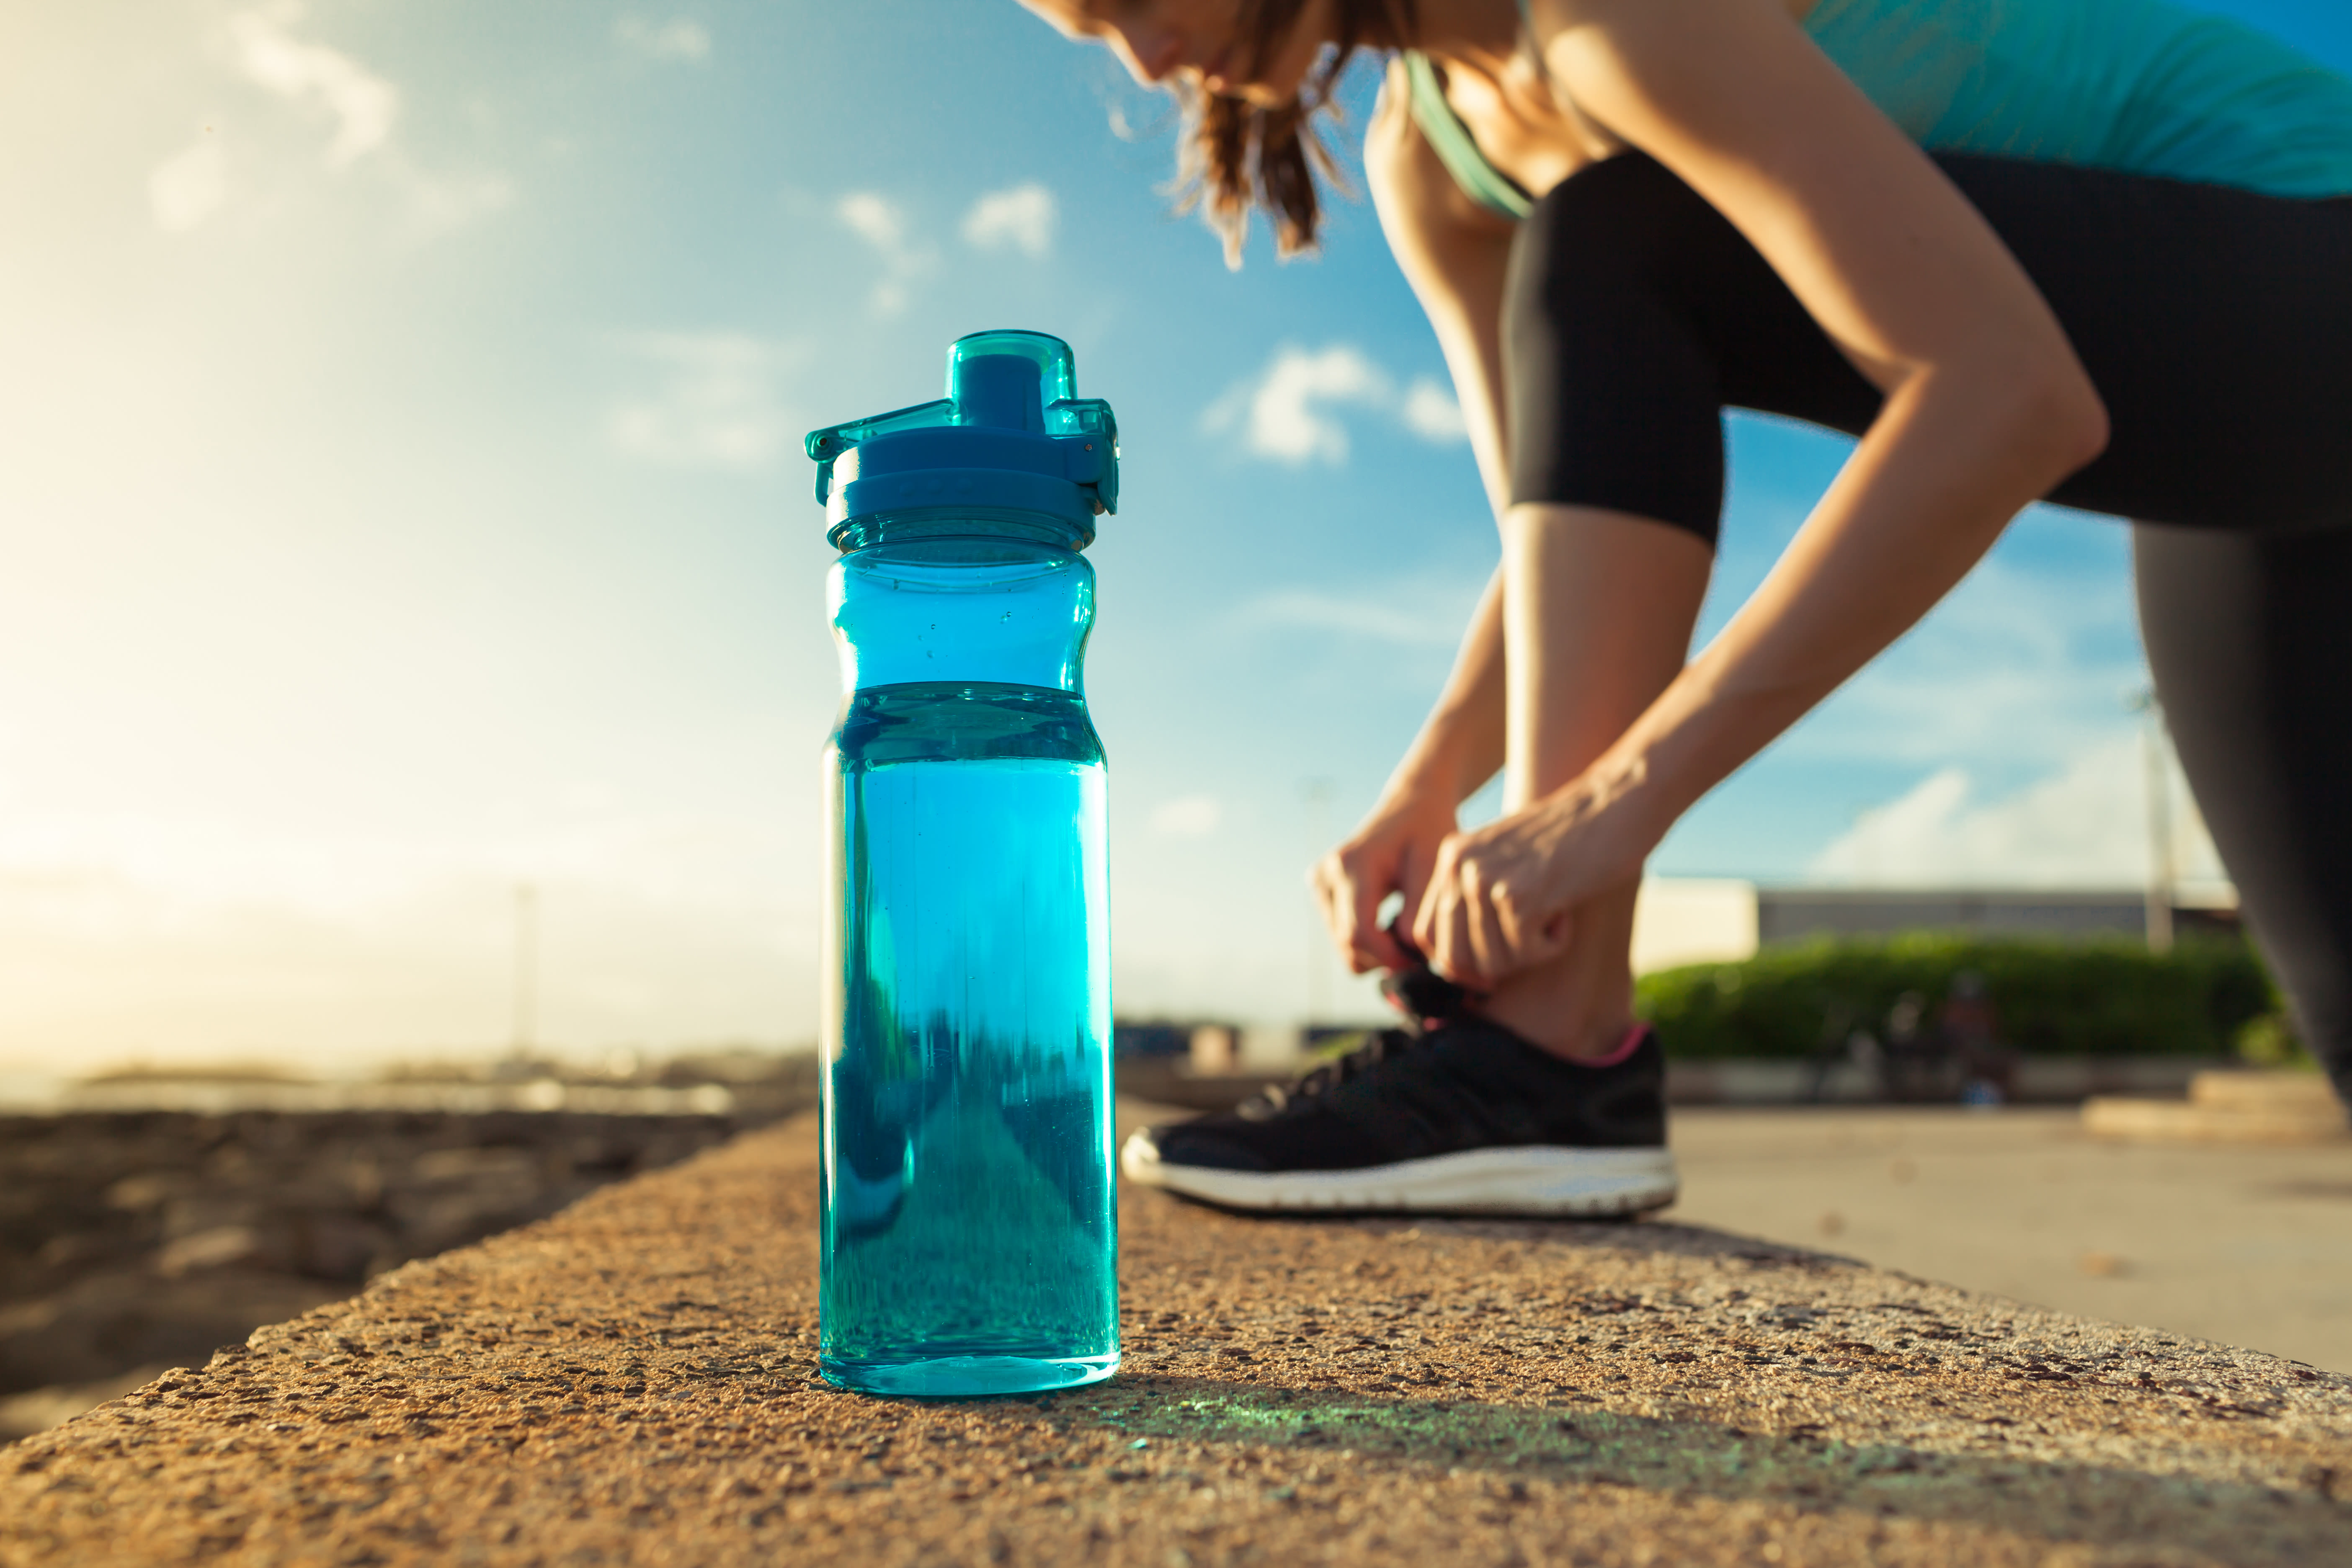 Hardlopen in de zomer vereist voldoende drinkwater. Foto: Adobe Stock / kieferpix